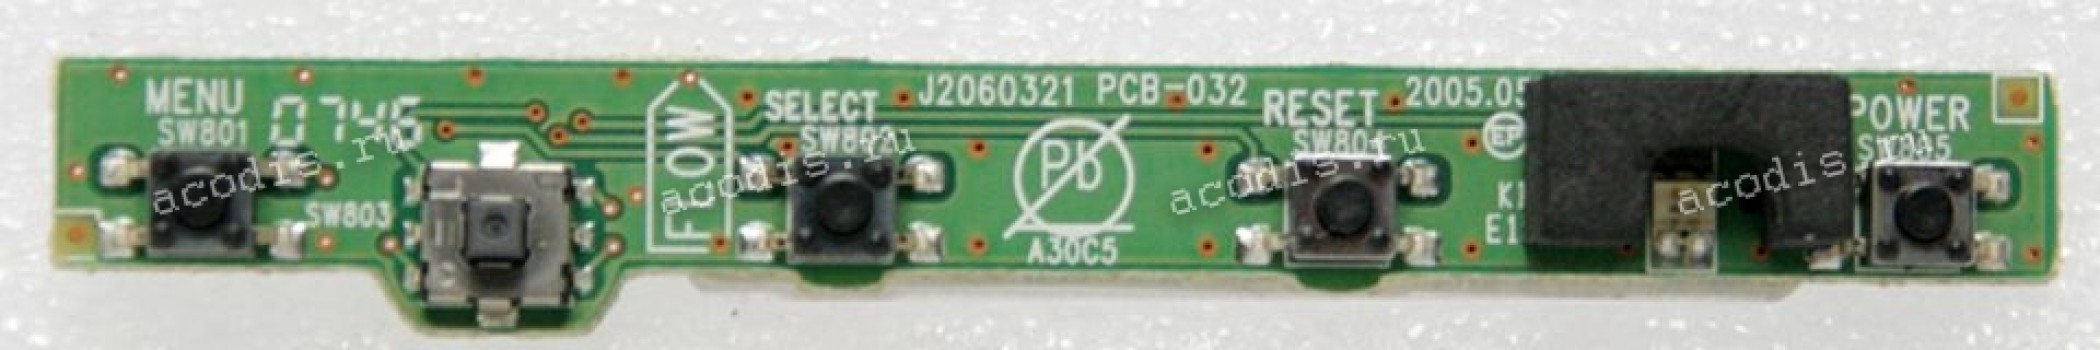 Switchboard NEC LCD1970NX-B12-2(L) (L194RH) (J2060321 PCB-032)